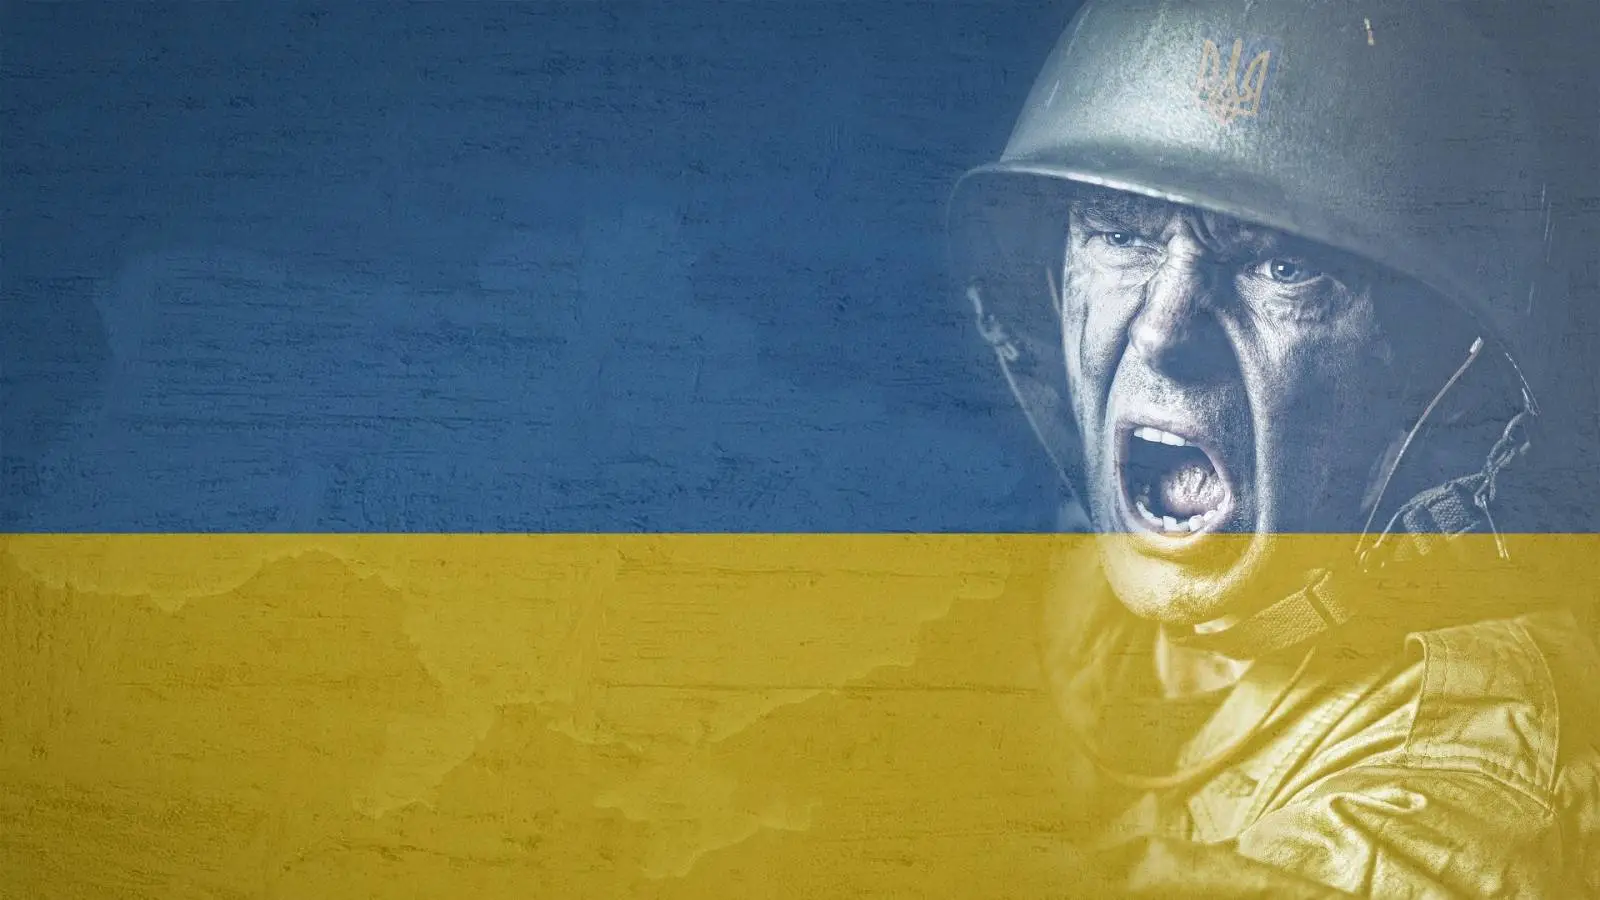 Den ryska armén har stärkt sin närvaro i södra Ukraina